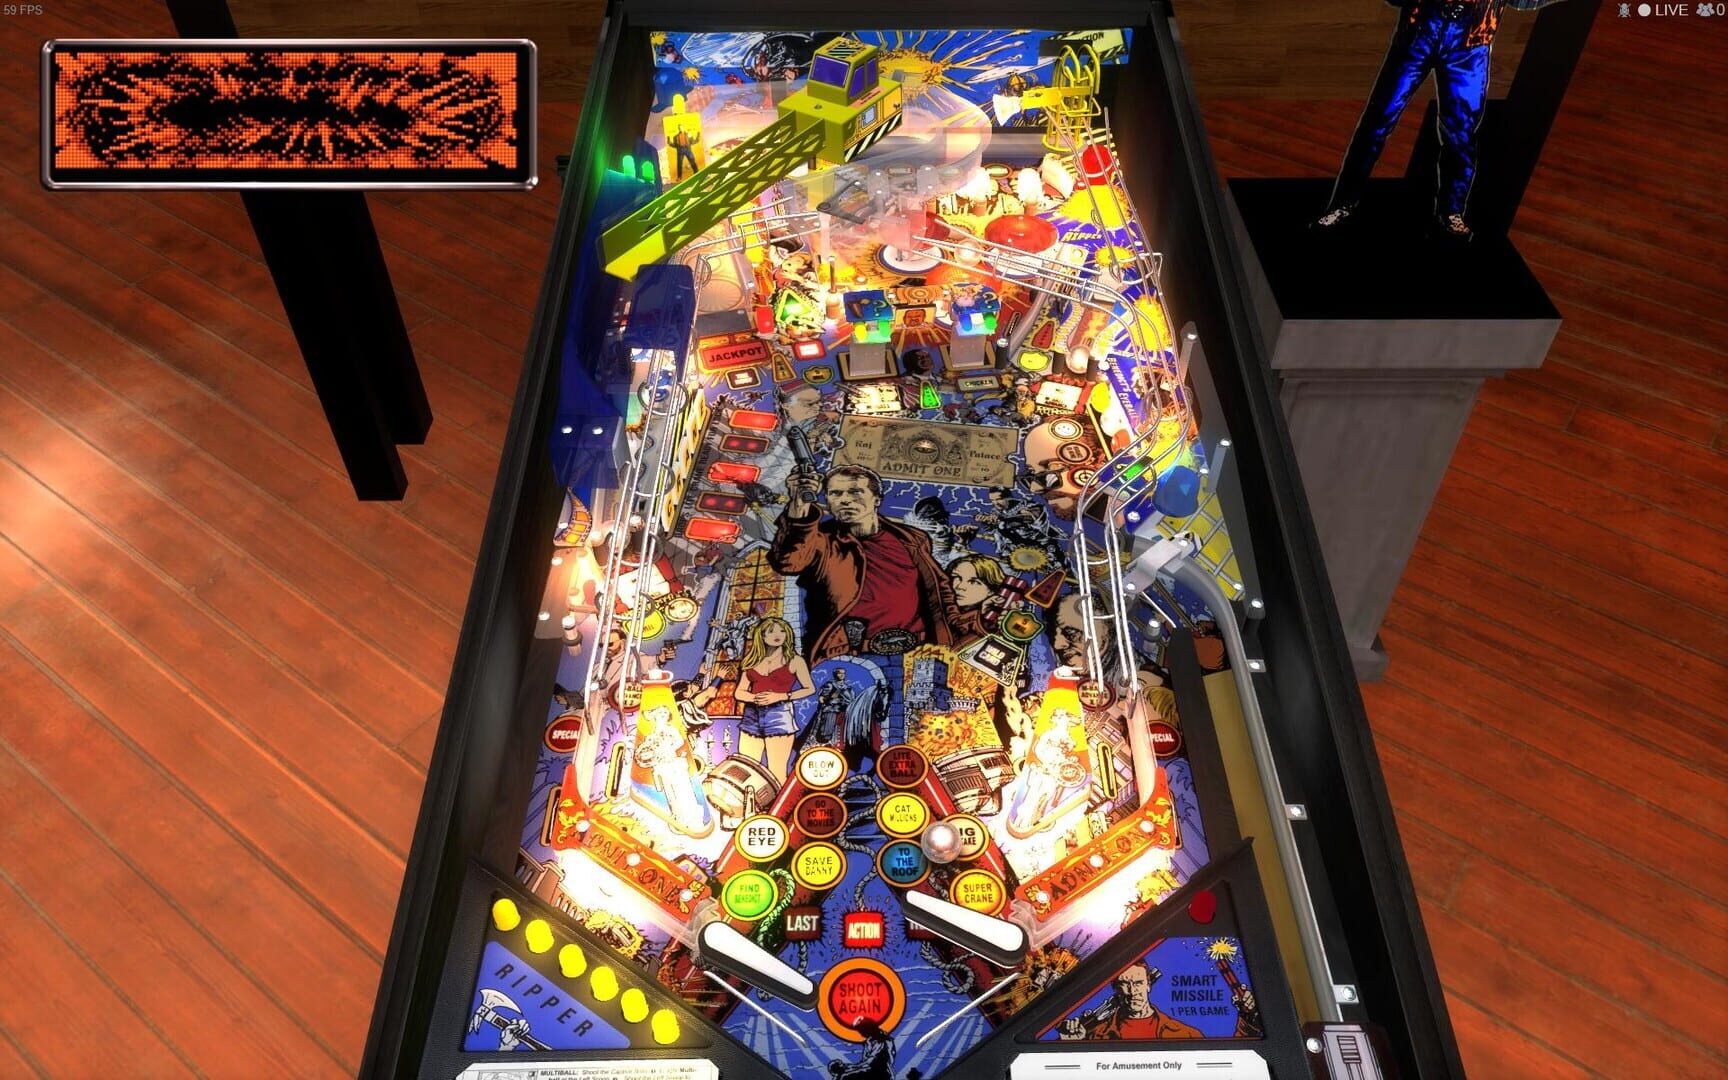 Stern Pinball Arcade: Last Action Hero screenshot